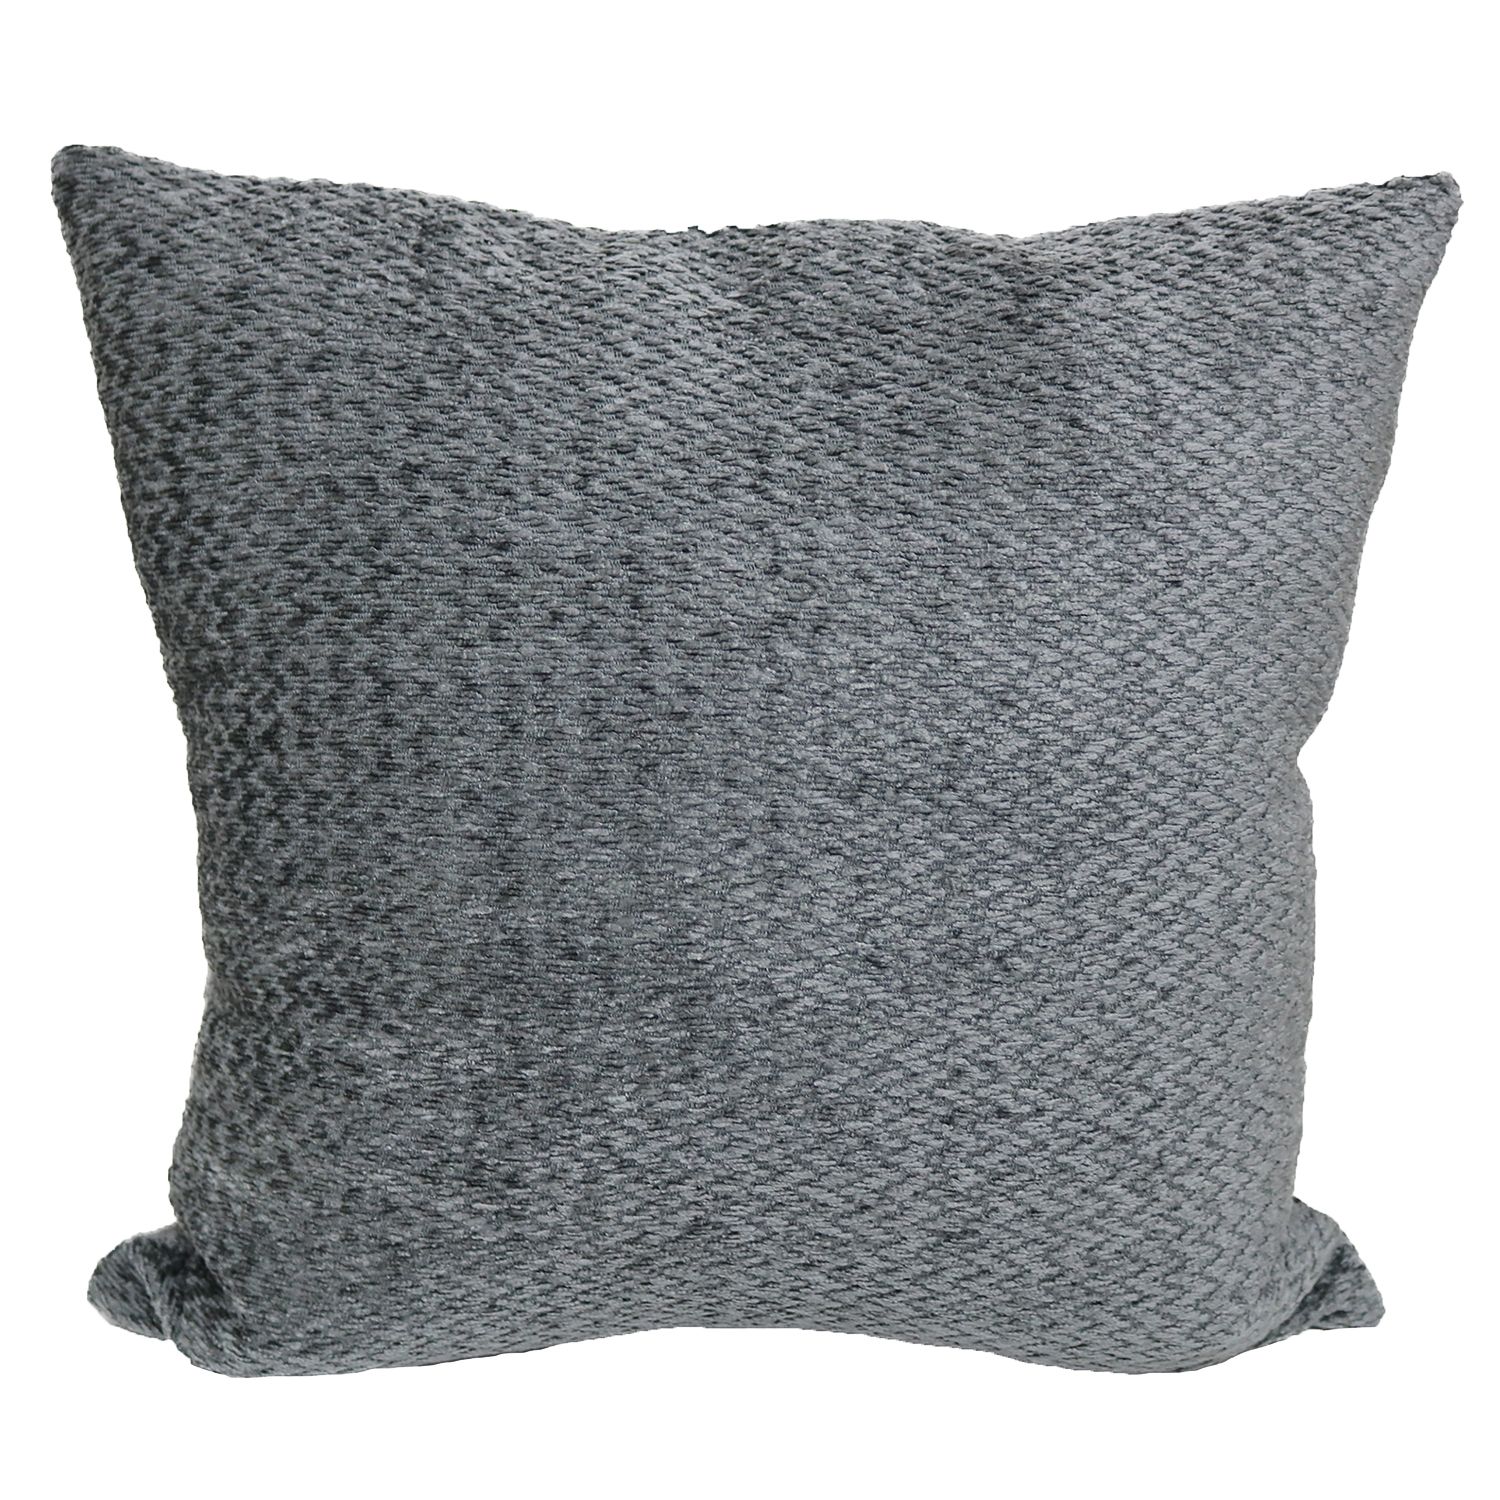 grey and white throw pillows